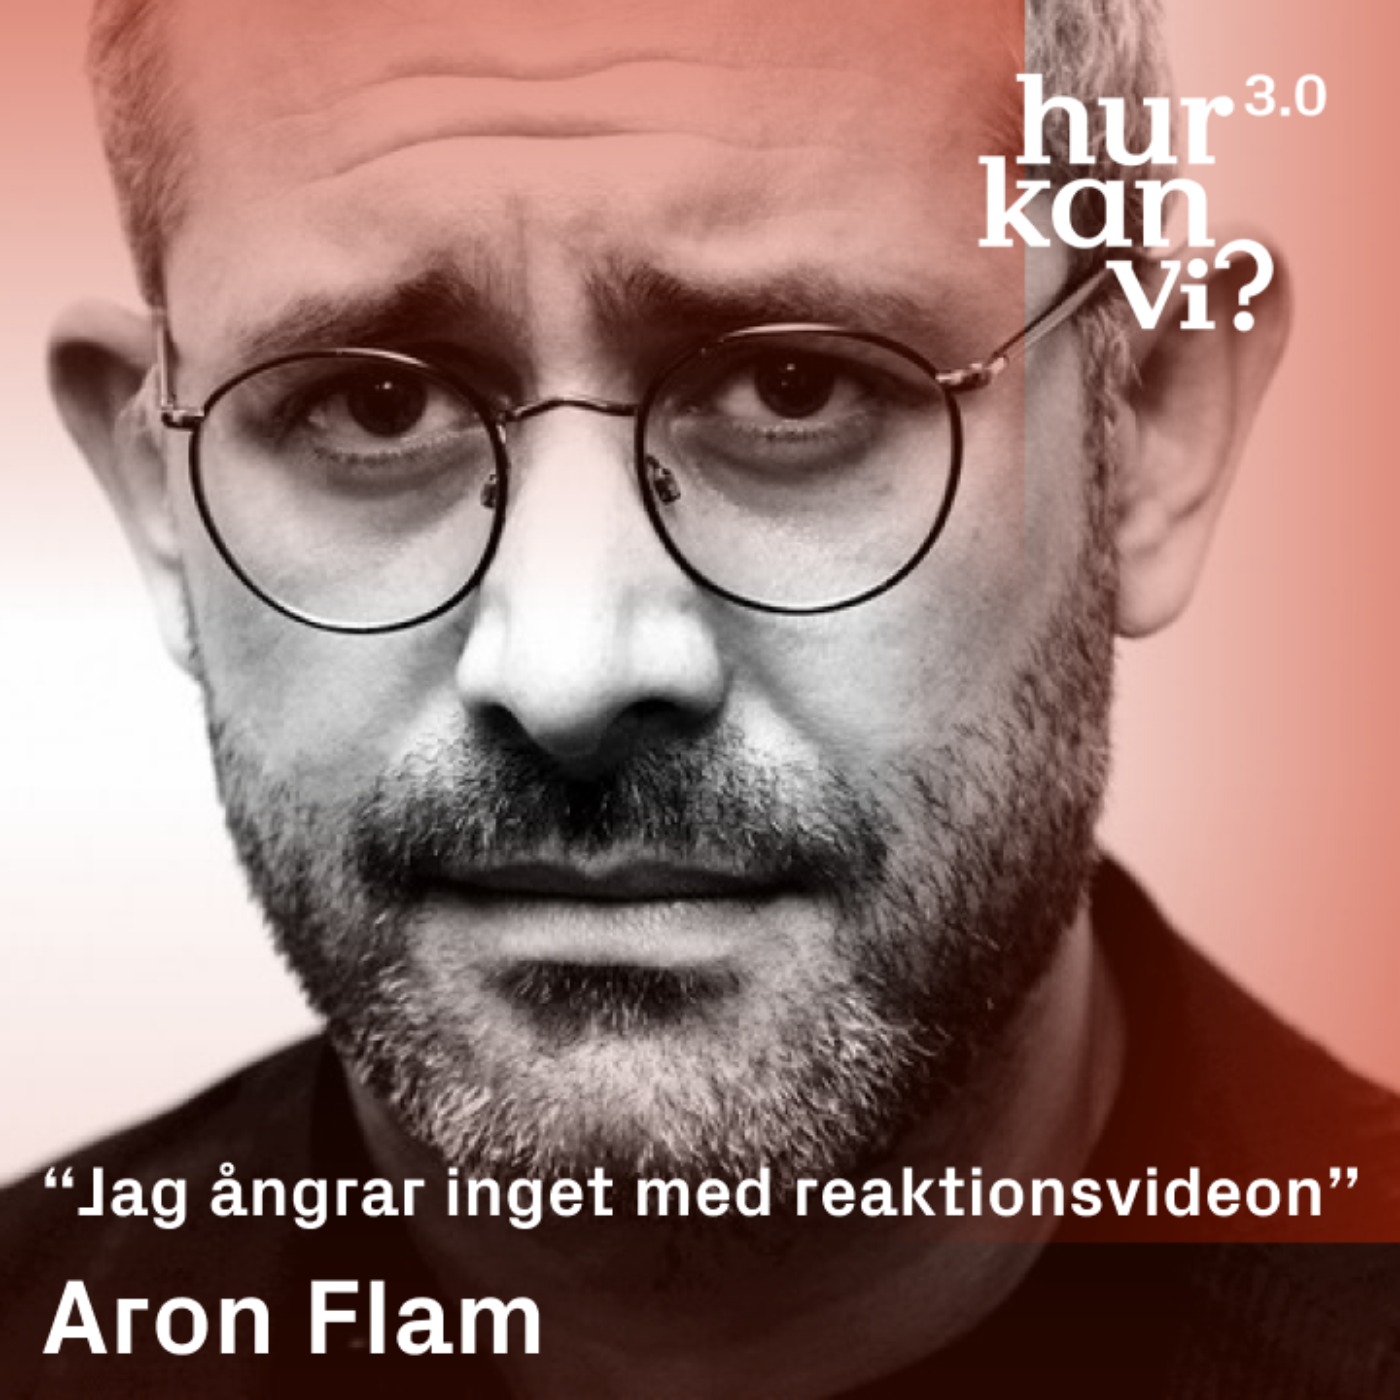 Aron Flam - “Jag ångrar inget med reaktionsvideon”